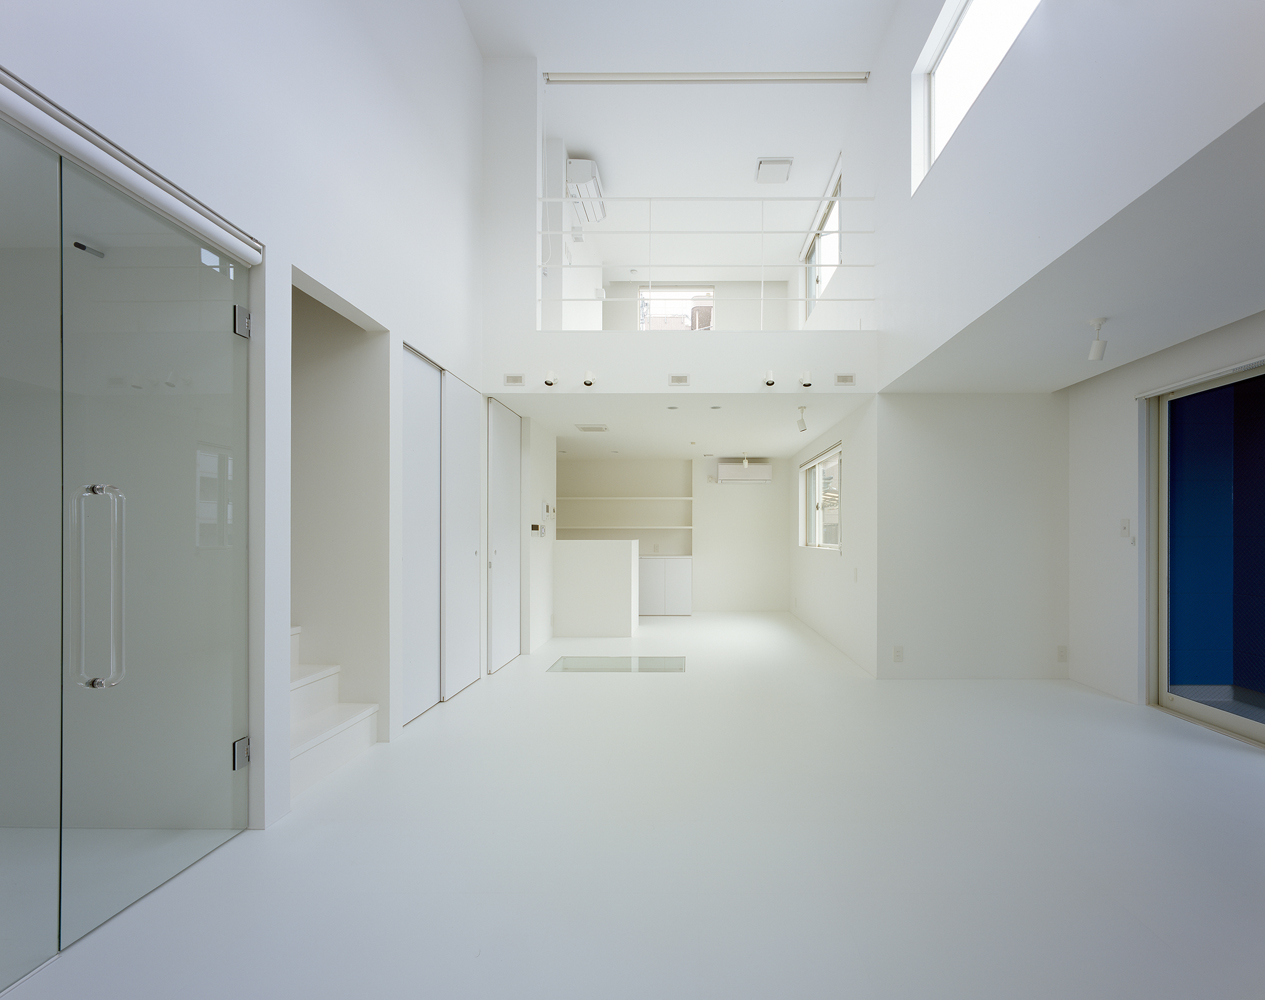 天井・壁・床、すべて真っ白！白の統一感がすごい住宅特集